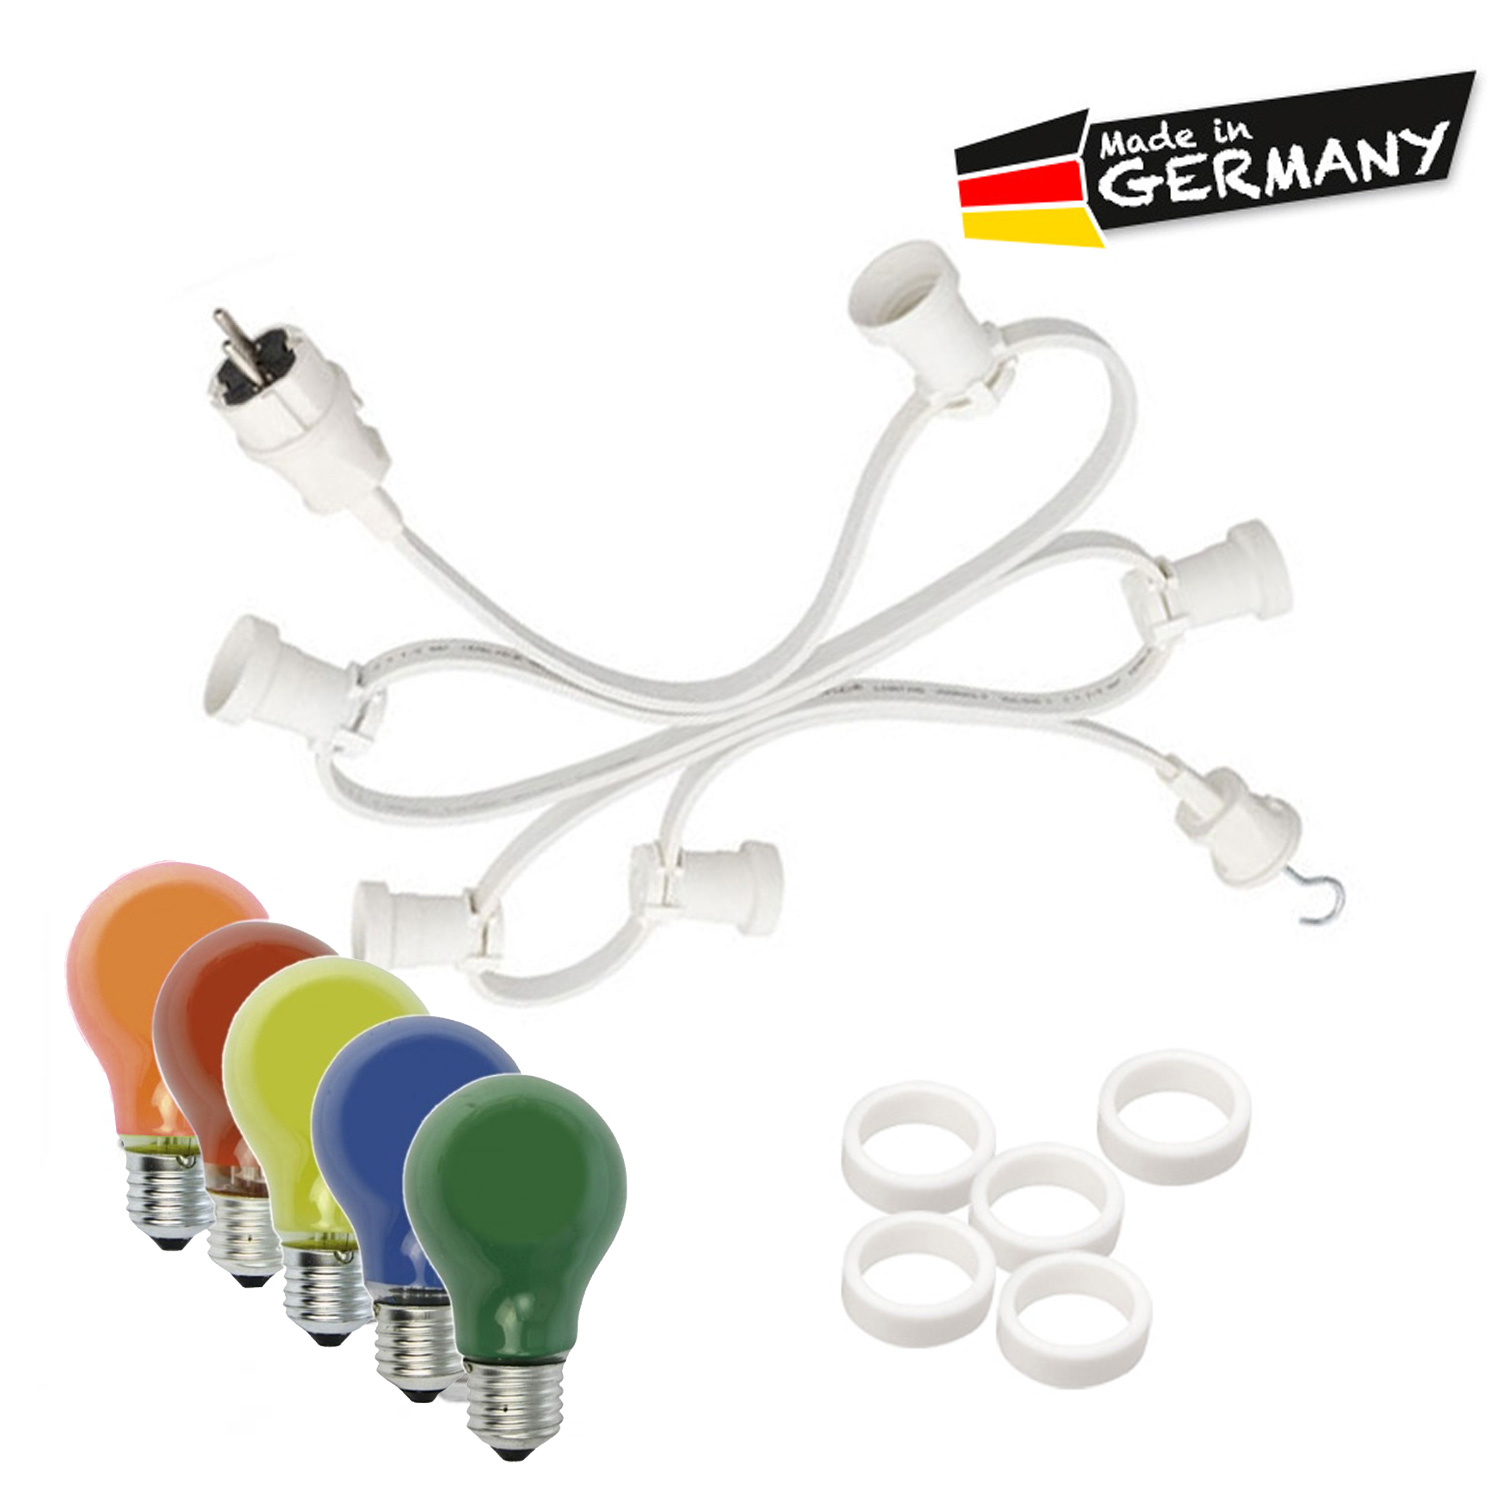 Illu-/Partylichterkette 30m - Außenlichterkette weiß - Made in Germany - 50 x bunte 25W Glühlampen